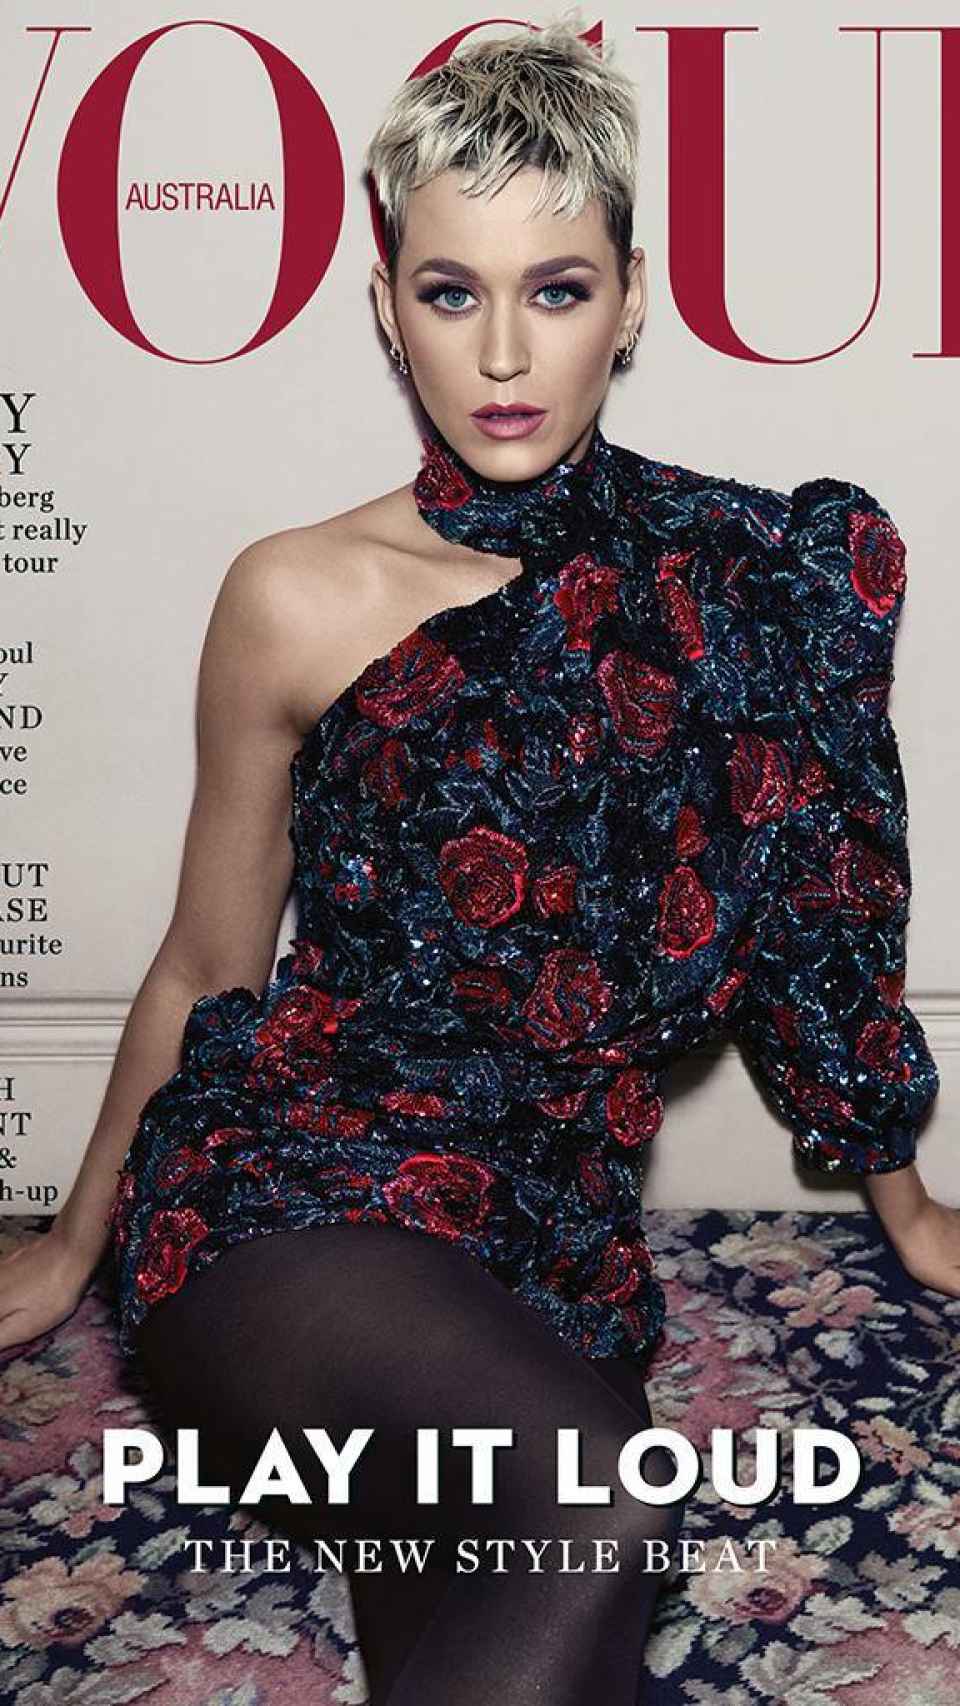 Katy Perry en la portada de 'Vogue Australia'.